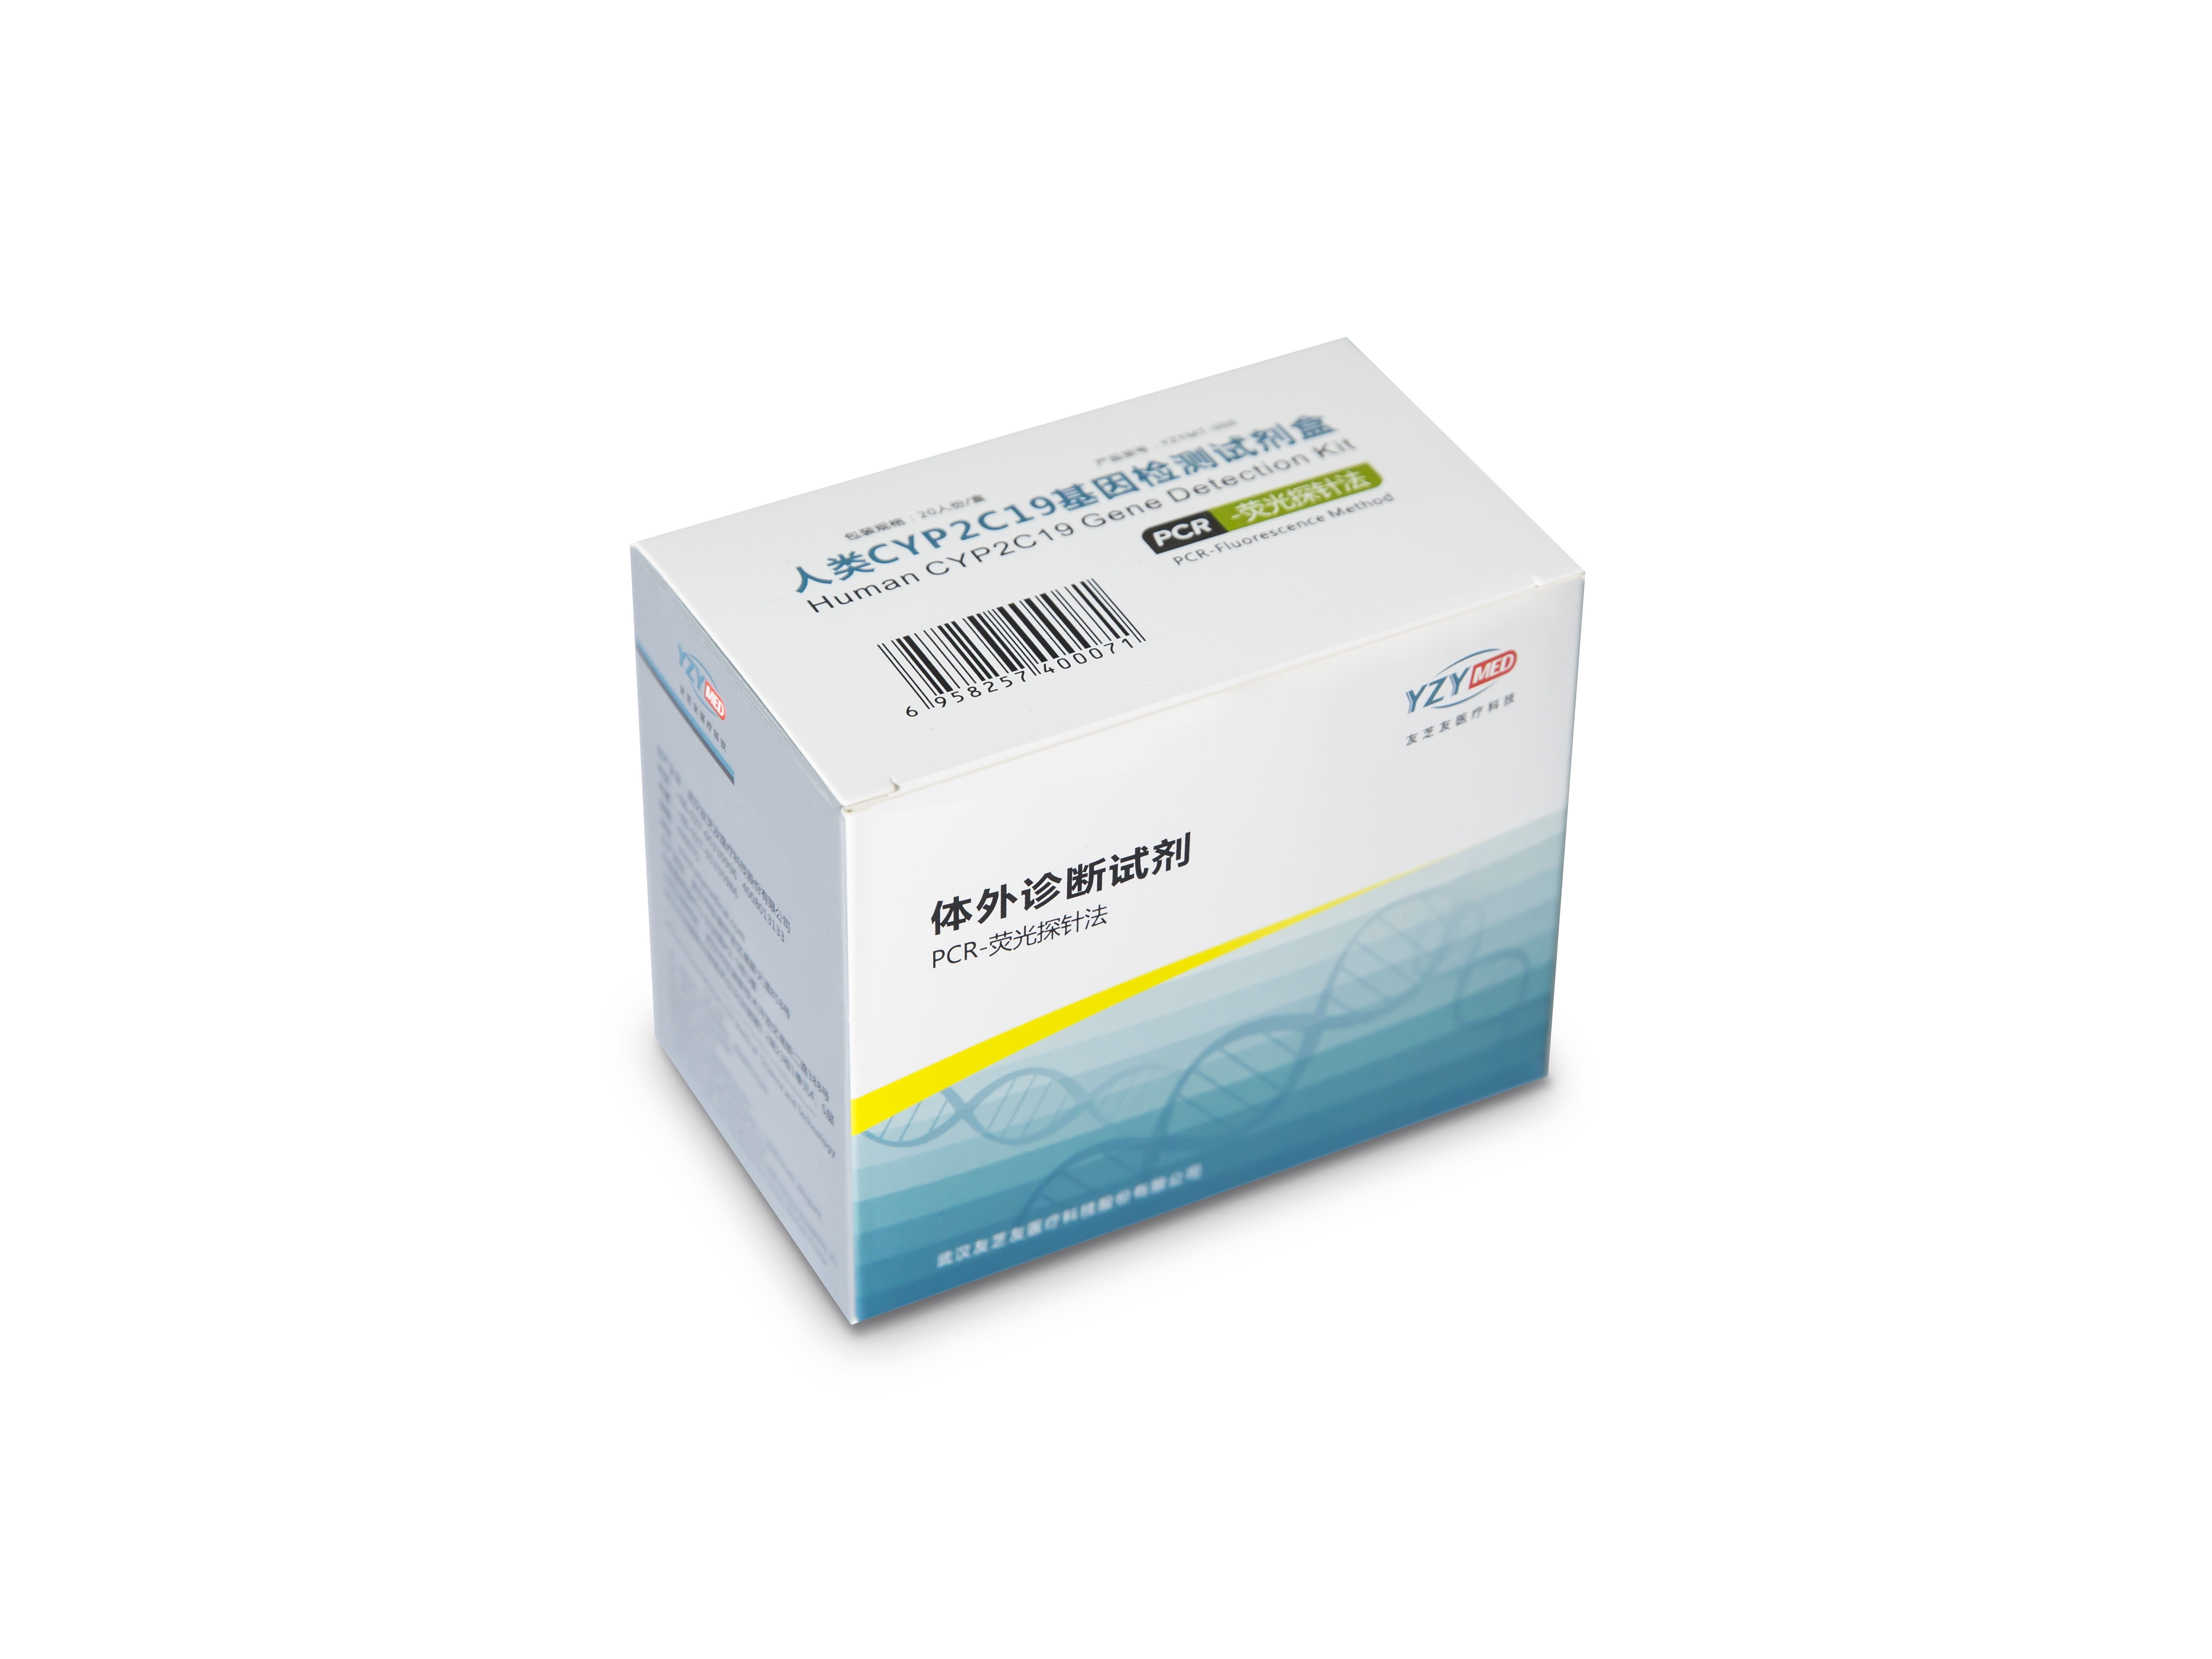 【友芝友】人类CYP2C19基因检测试剂盒(PCR-荧光探针法)-云医购